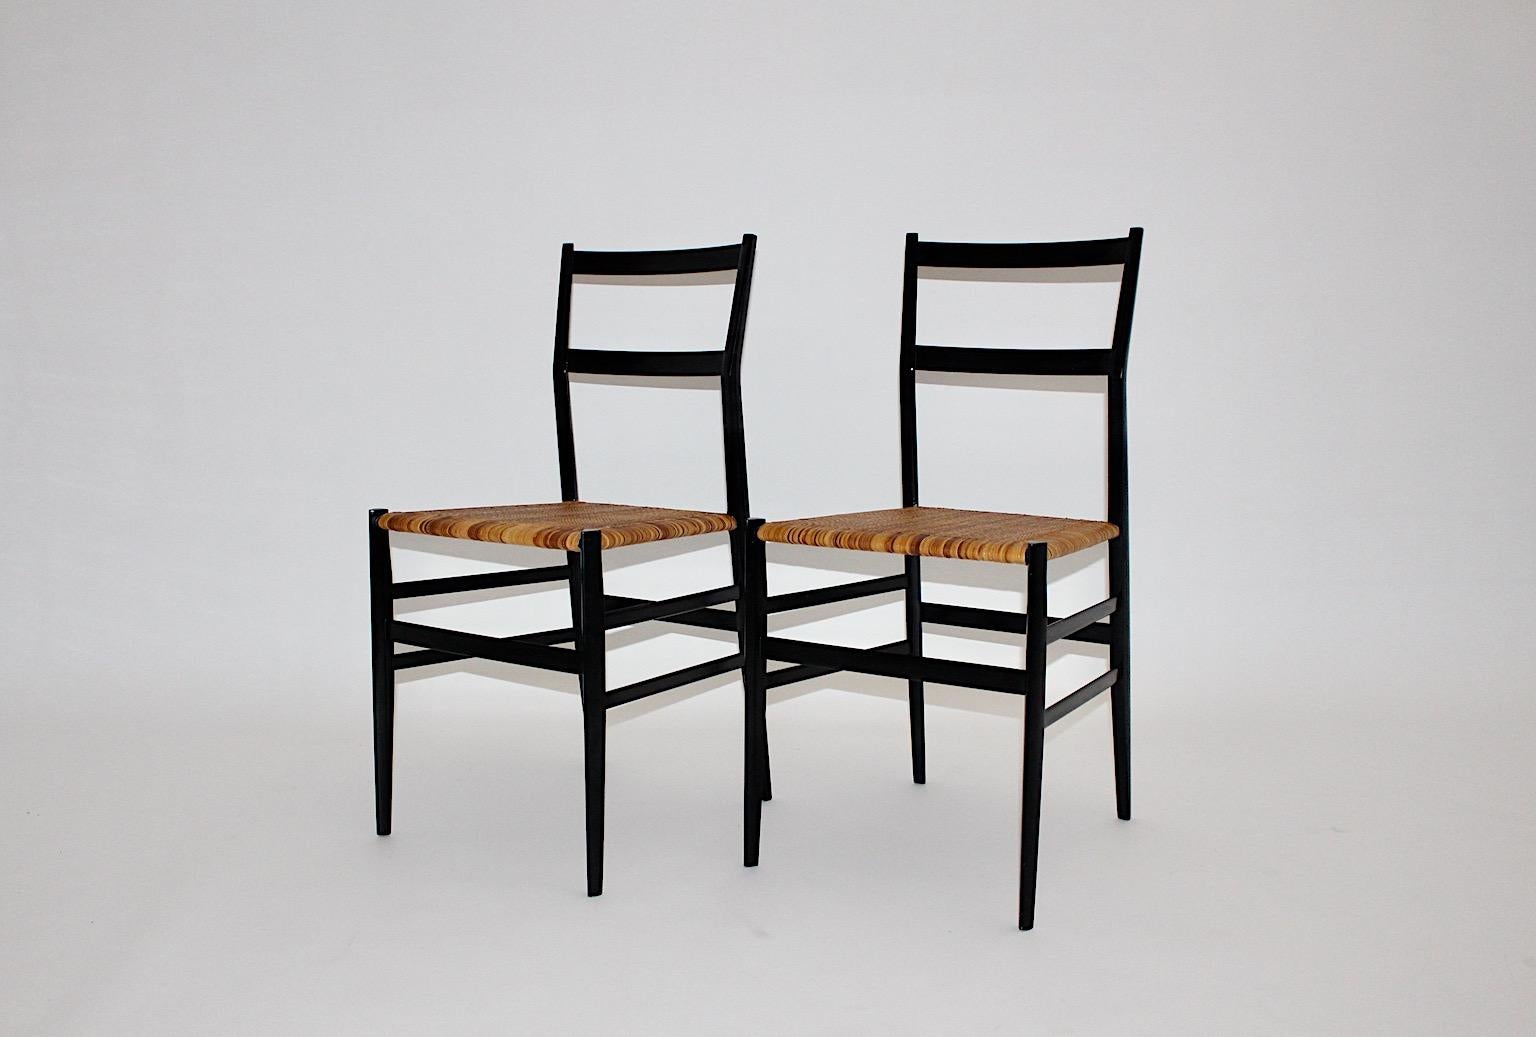 Paire ou duo authentique de chaises de salle à manger Superleggera en bois laqué noir et cannage marron clair, conçues en 1957 par Gio Ponti et fabriquées dans les années 1980 pour Cassina.
Cet élégant duo de chaises ou de fauteuils de salle à